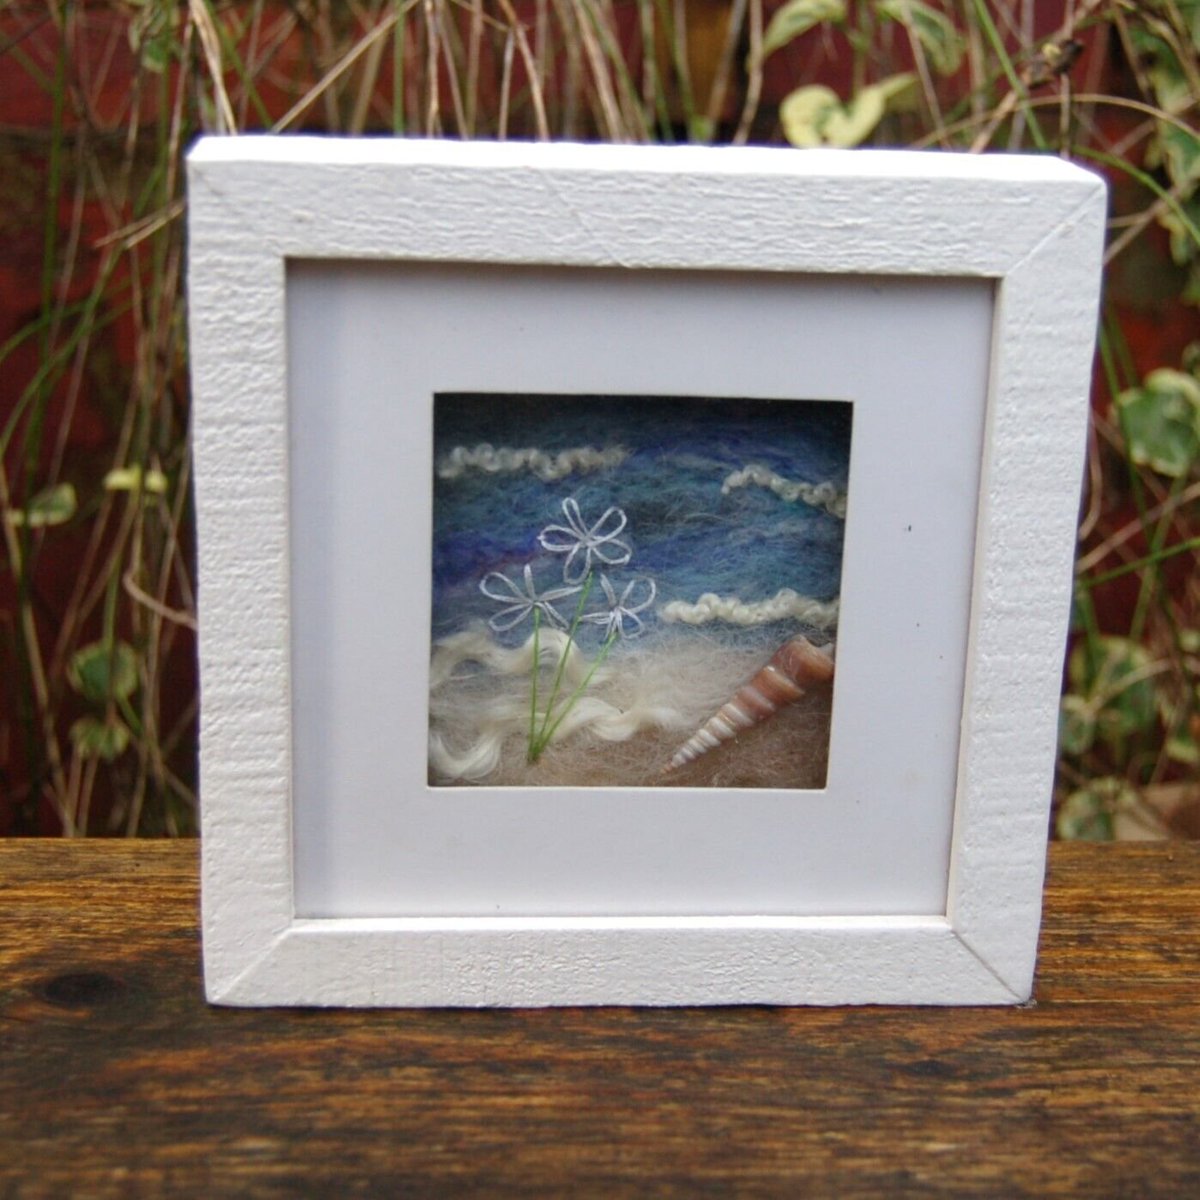 Framed Needle Felted Picture with hand stitched daisies - Shoreline scene ebay.co.uk/itm/1862279607… #eBay via @eBay_UK